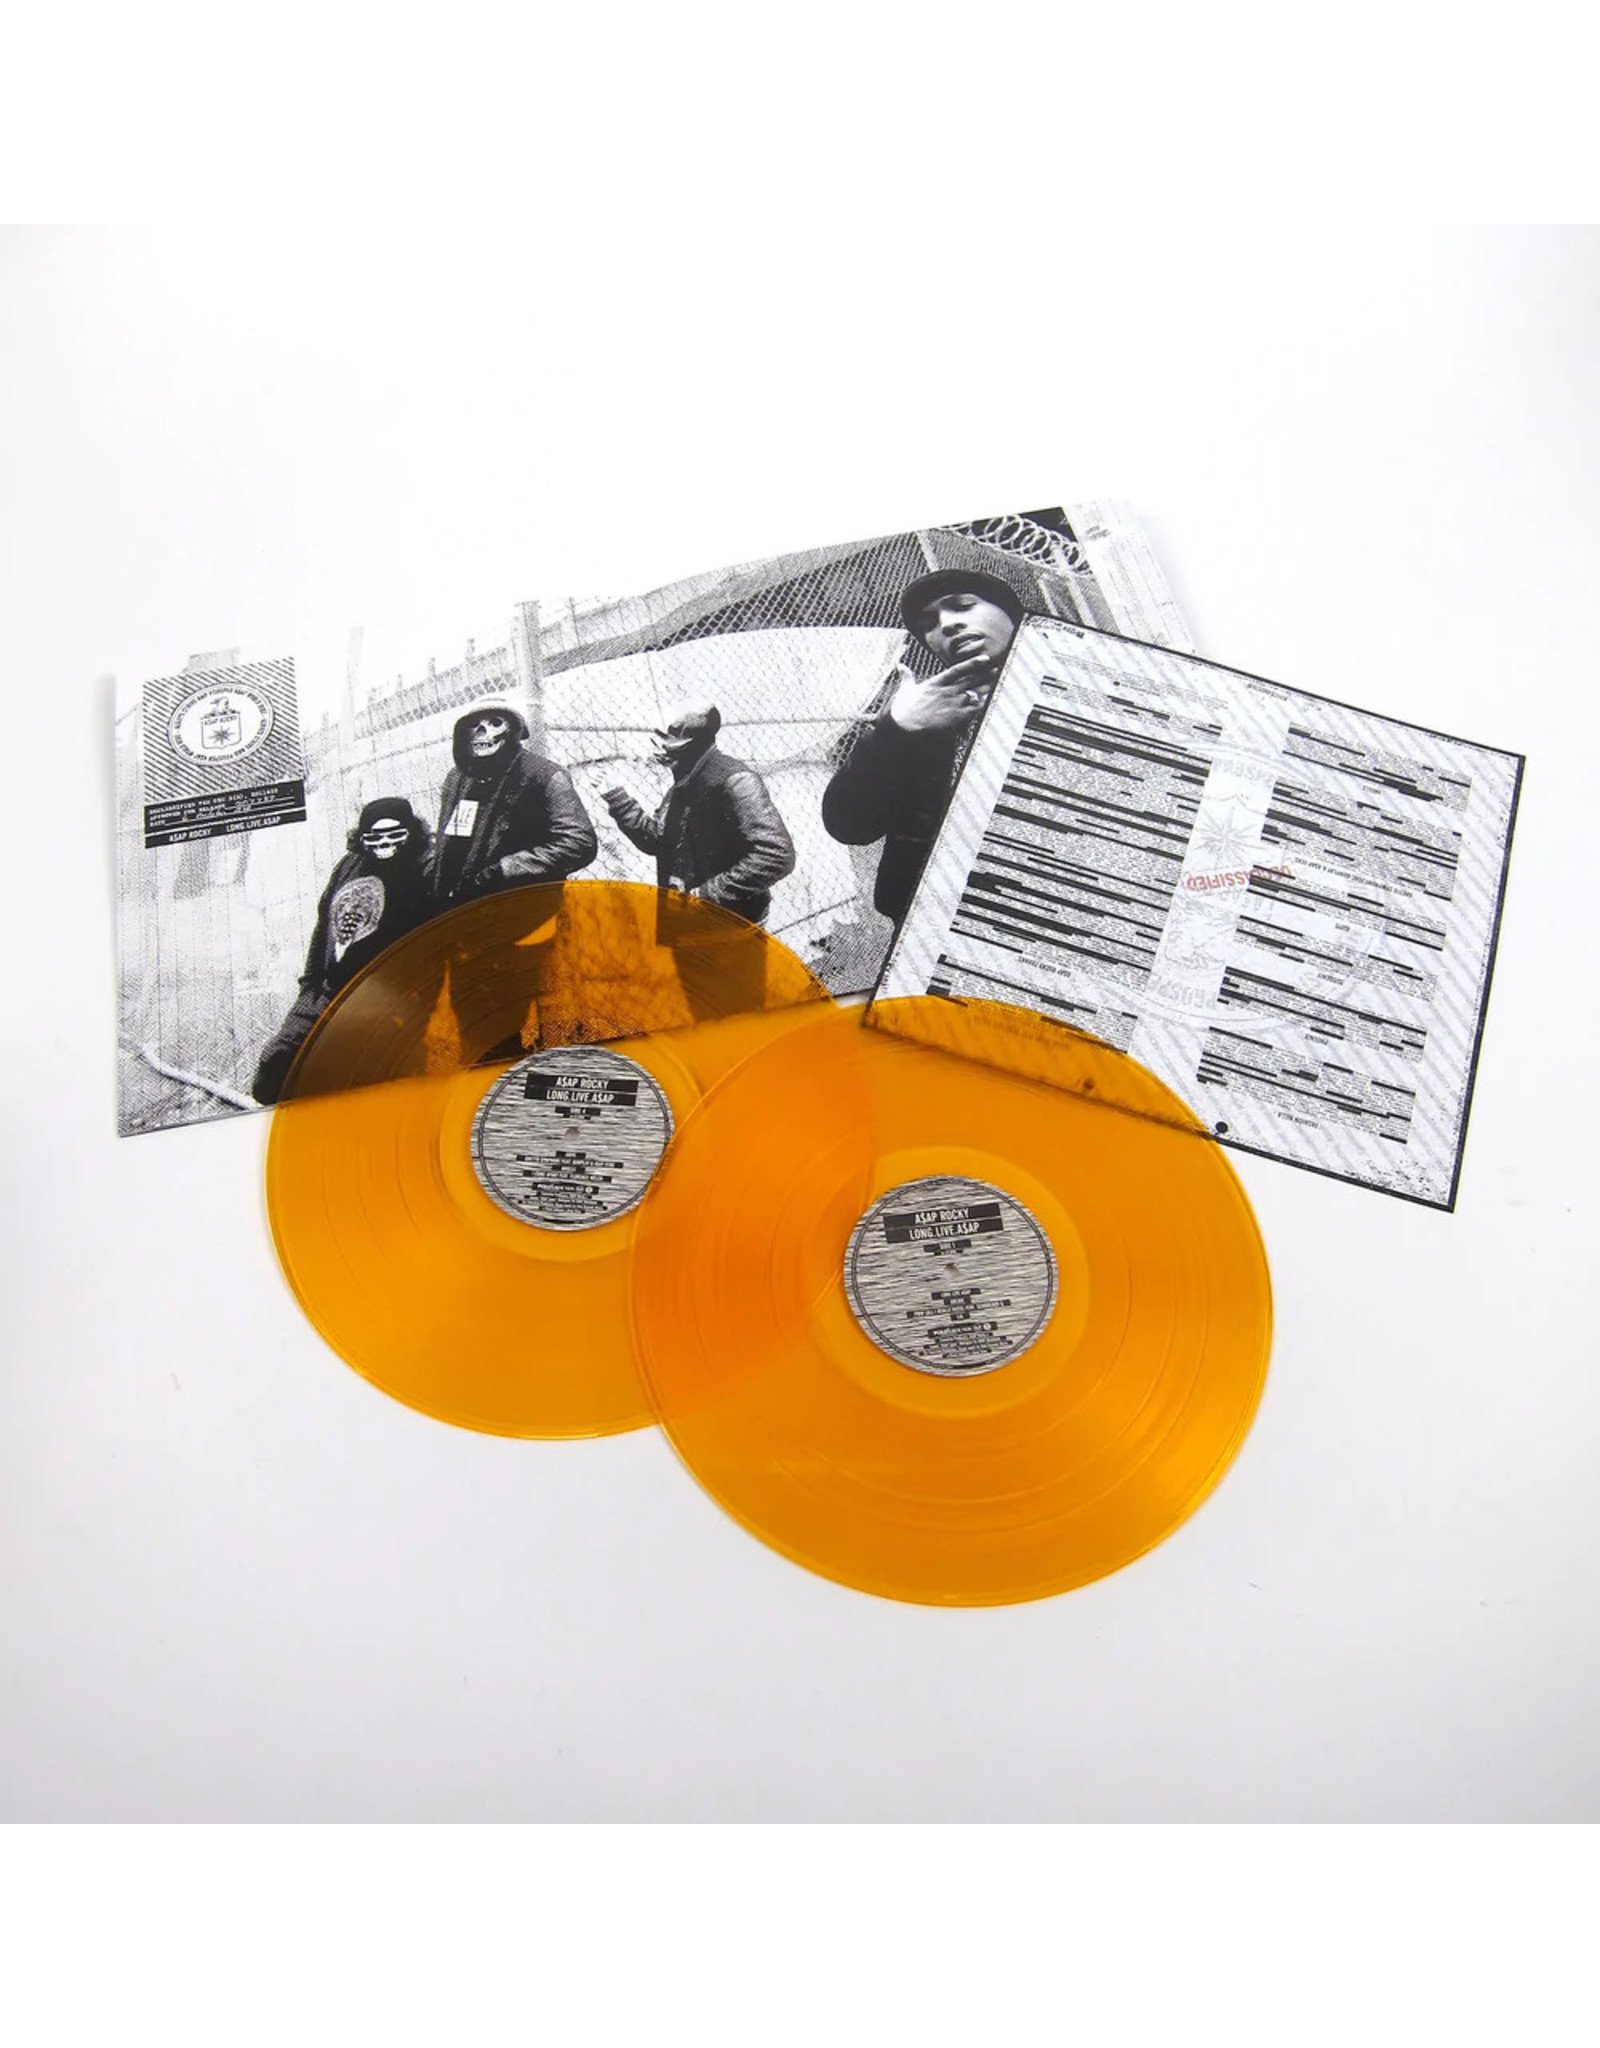 A$AP Rocky - Long.Live.A$AP (Orange Vinyl)